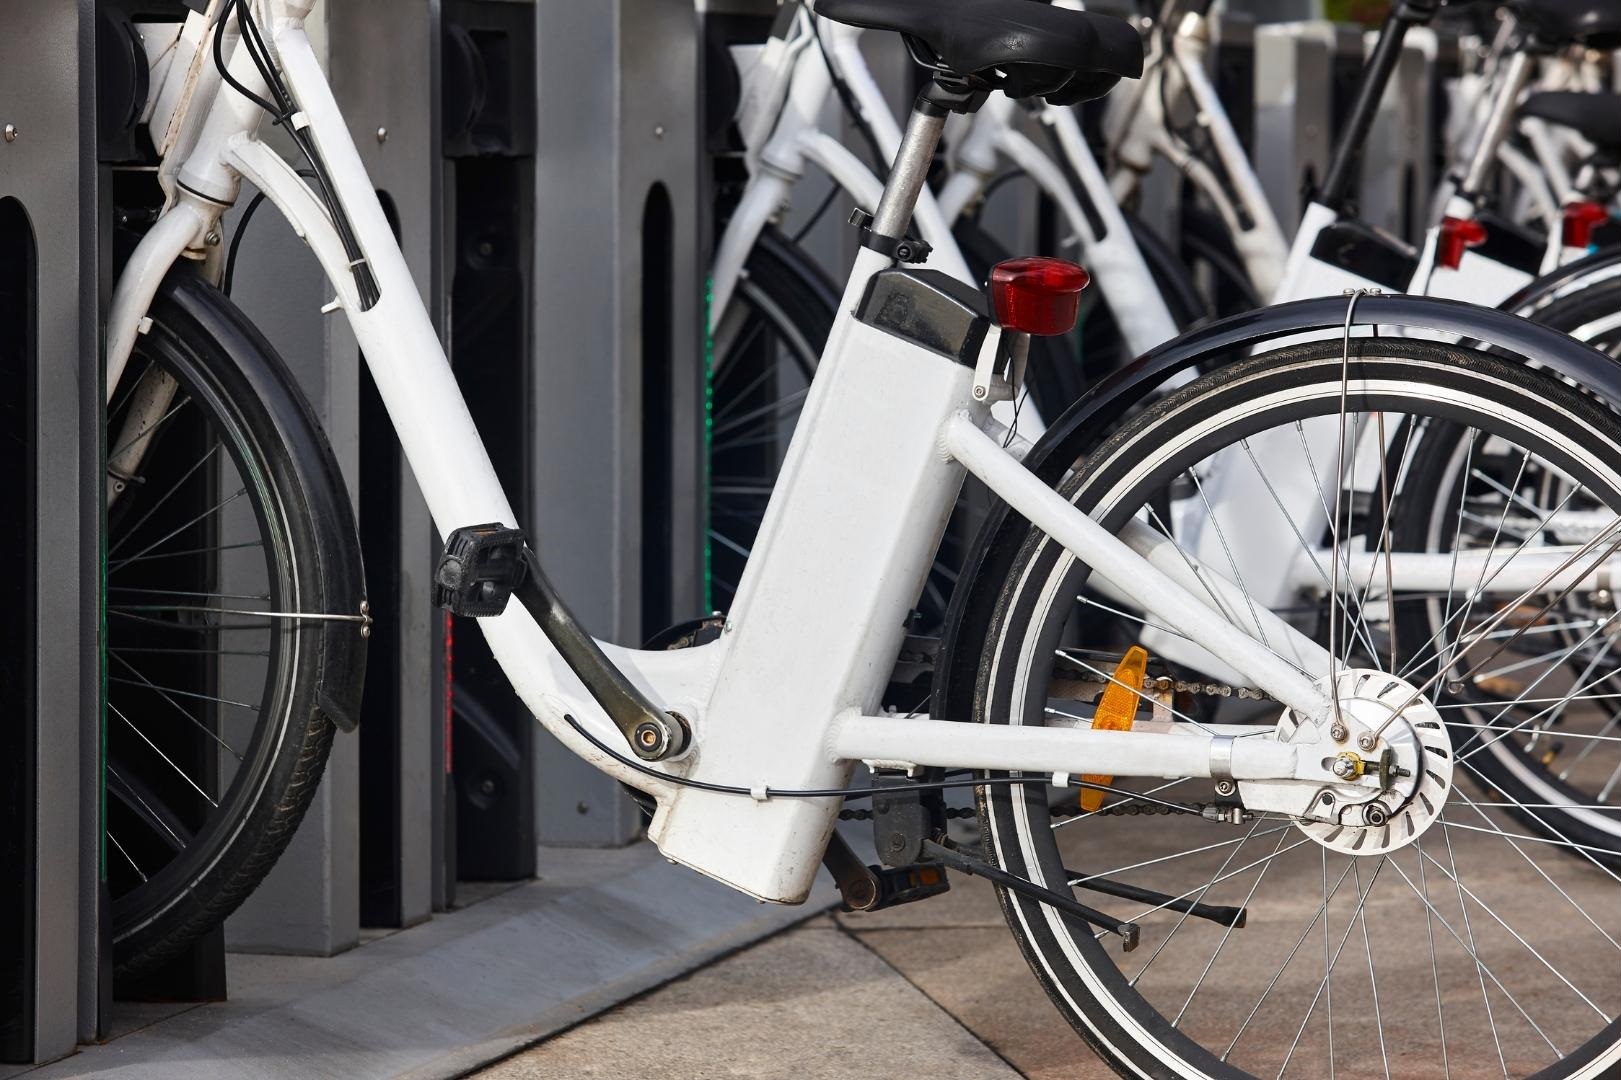 Κοινόχρηστα ηλεκτρικά ποδήλατα αποκτά ο Δήμος Νάξου και Μικρών Κυκλάδων